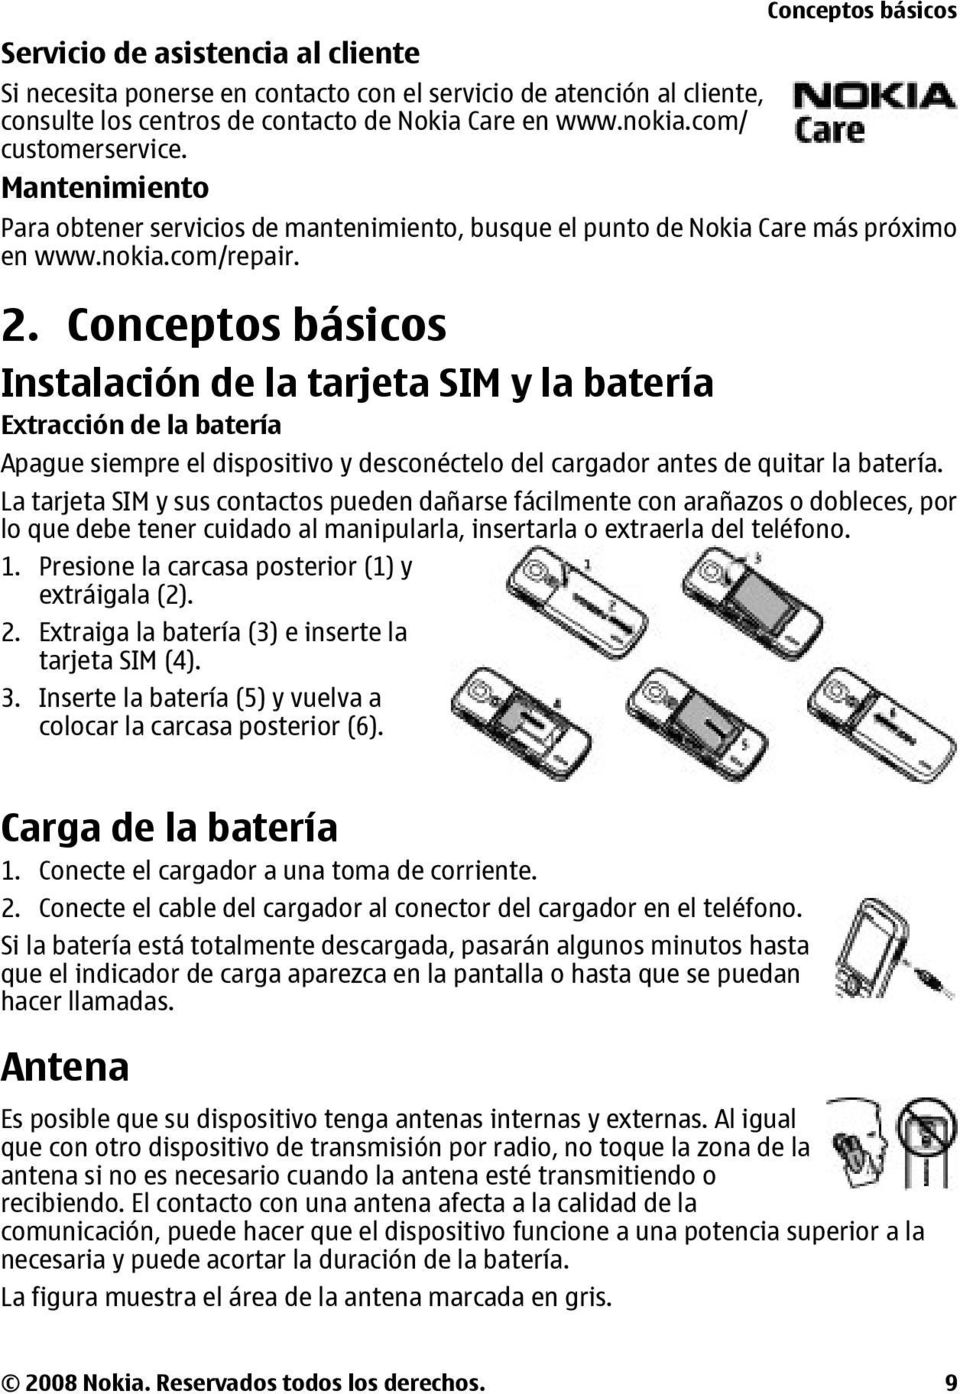 Conceptos básicos Instalación de la tarjeta SIM y la batería Extracción de la batería Conceptos básicos Apague siempre el dispositivo y desconéctelo del cargador antes de quitar la batería.